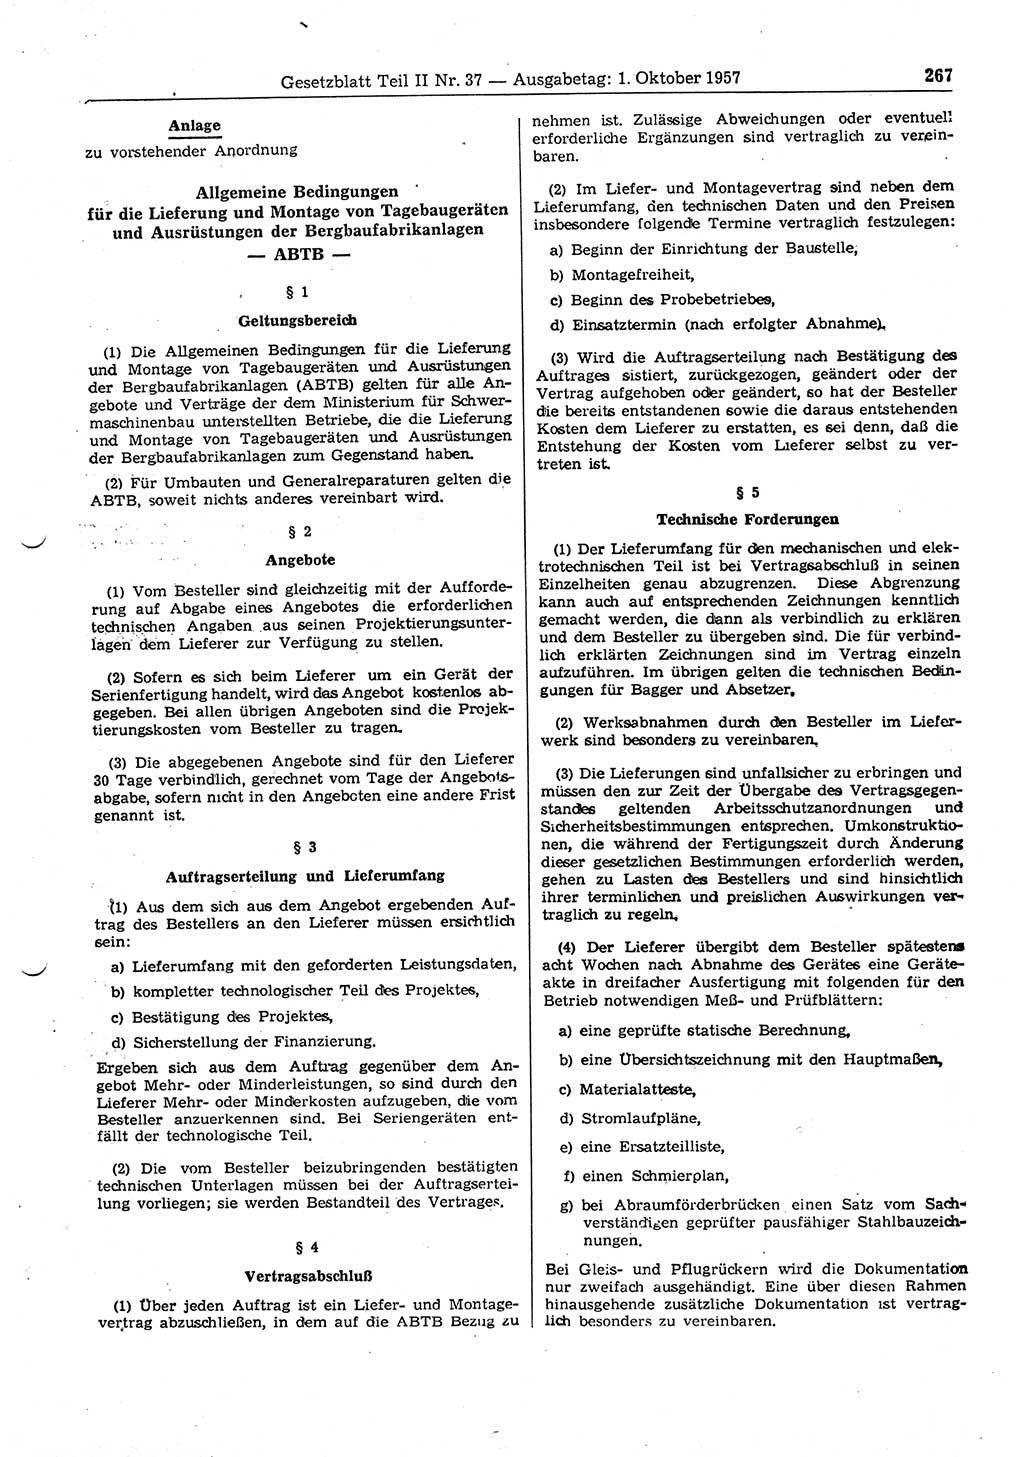 Gesetzblatt (GBl.) der Deutschen Demokratischen Republik (DDR) Teil ⅠⅠ 1957, Seite 267 (GBl. DDR ⅠⅠ 1957, S. 267)